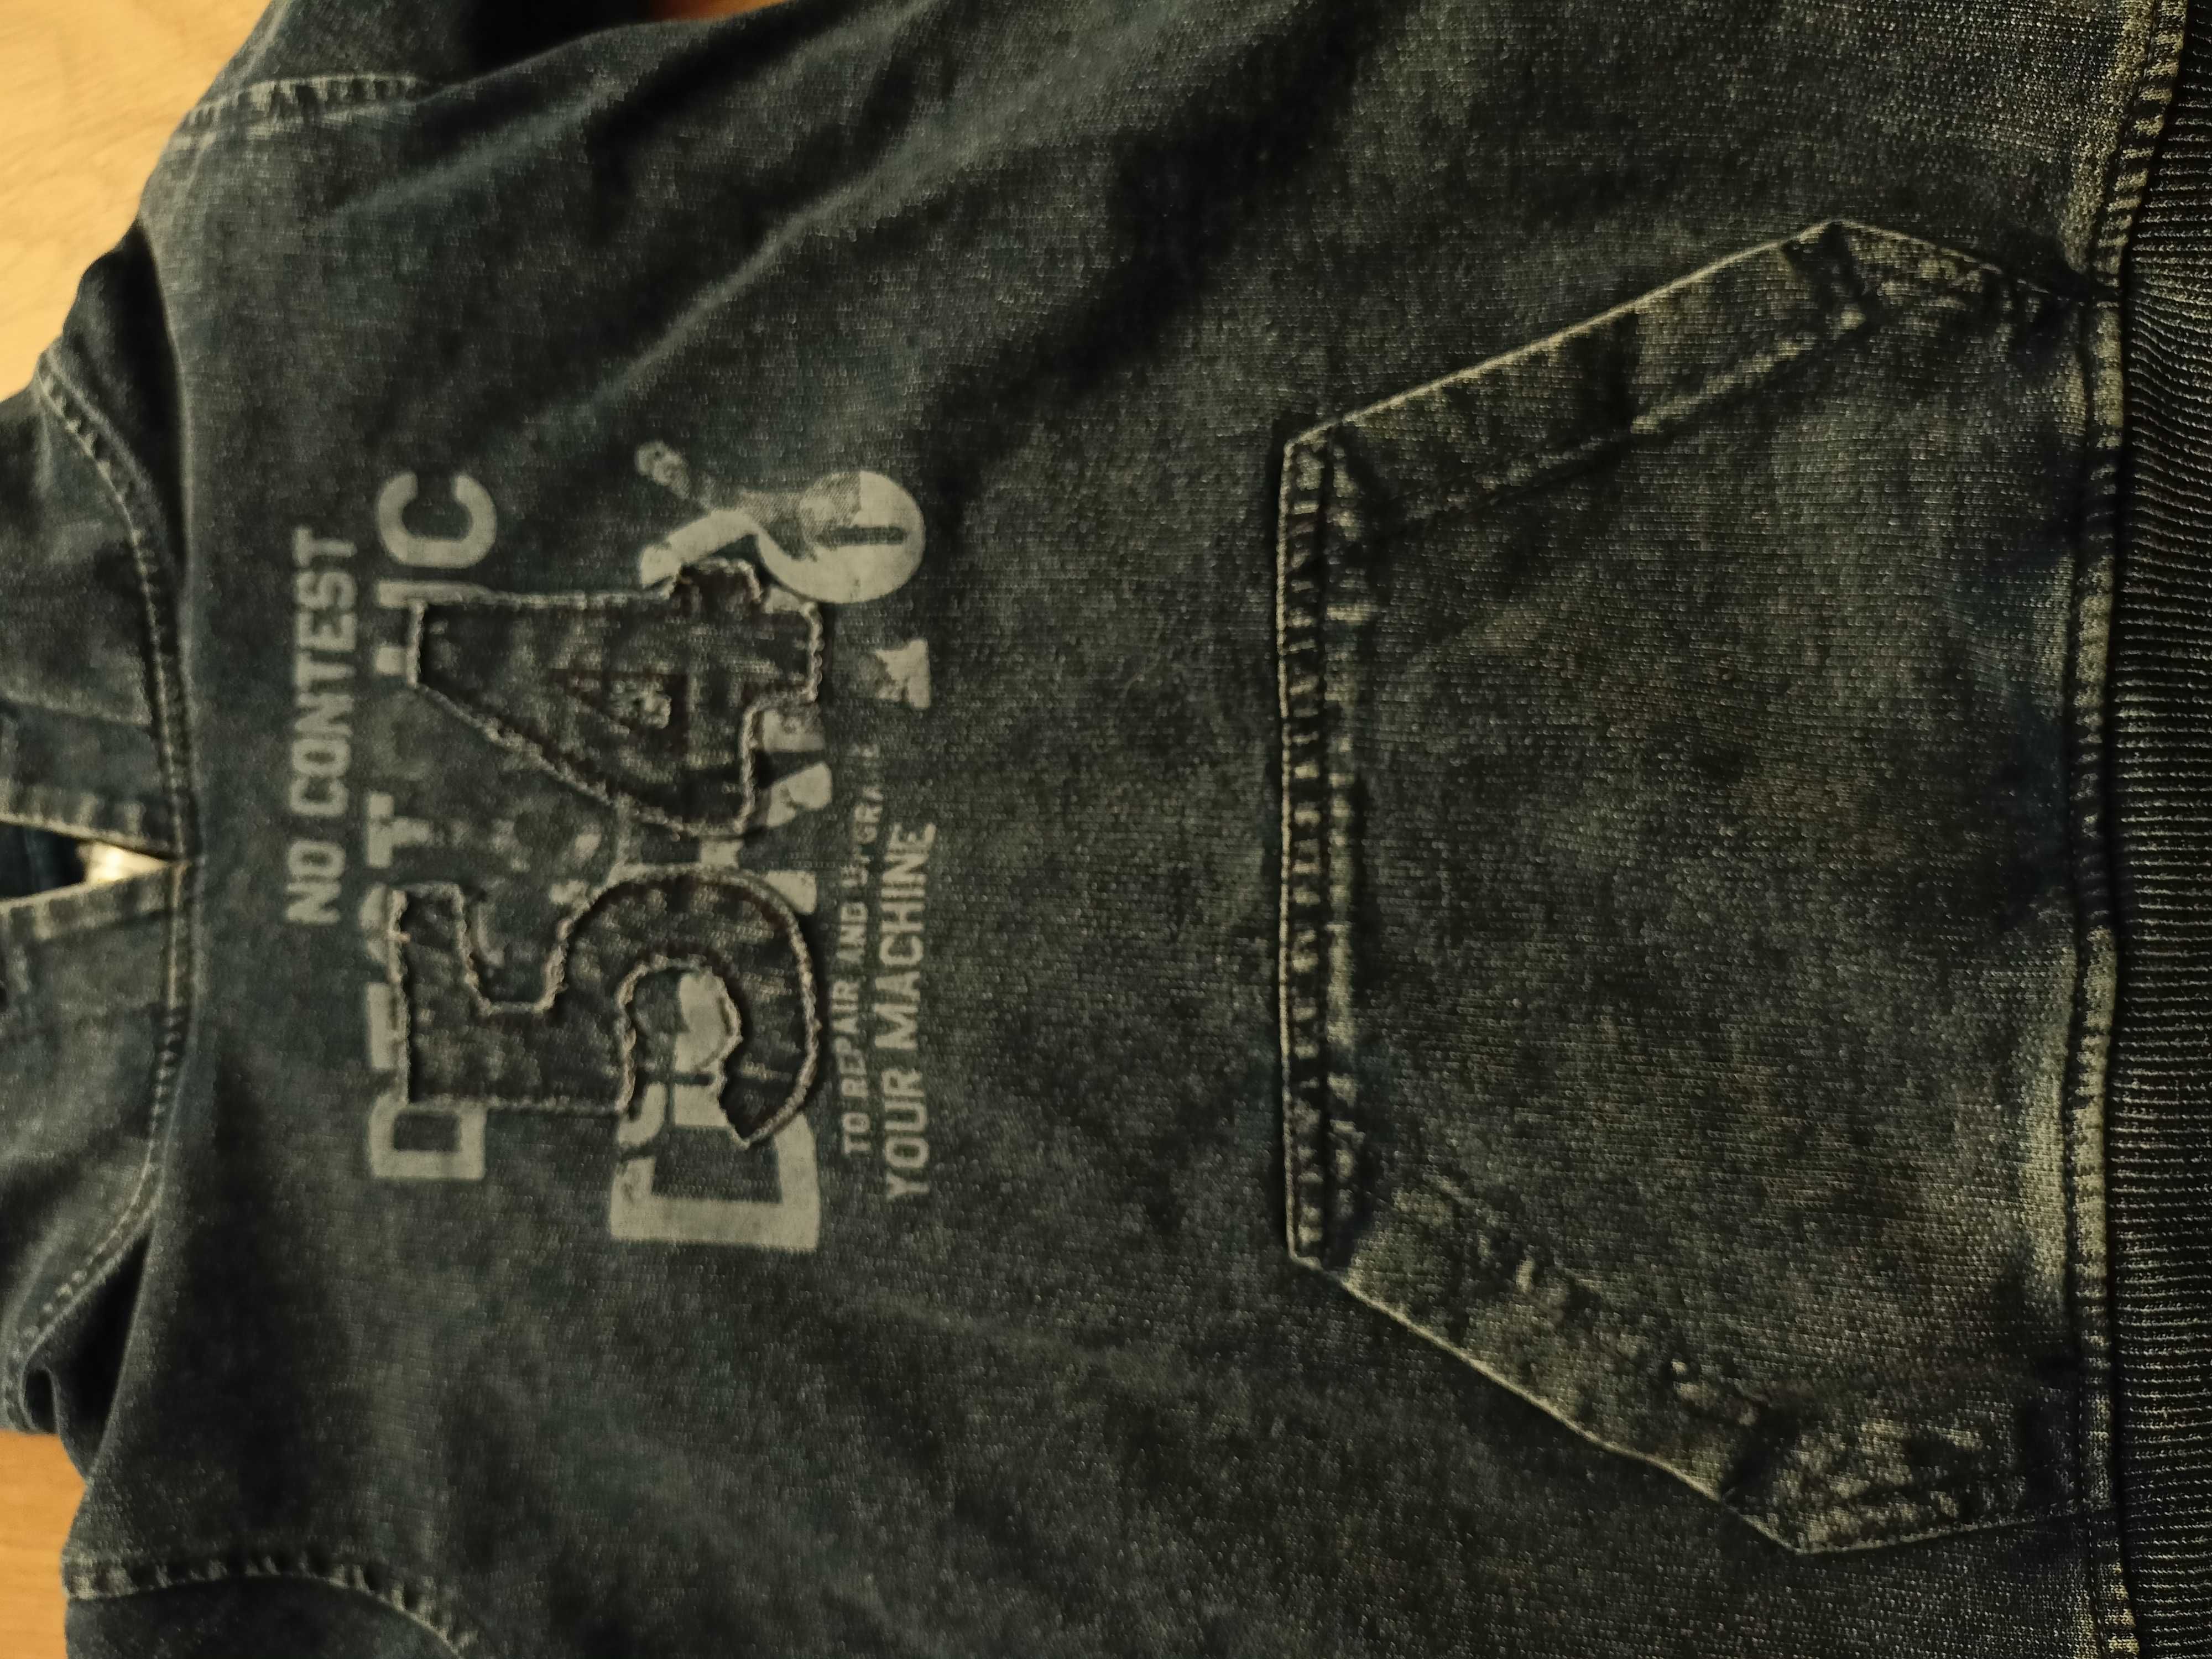 Bluza chłopięca z kapturem, granatowa, imitacja jeansu - rozm. 110/116